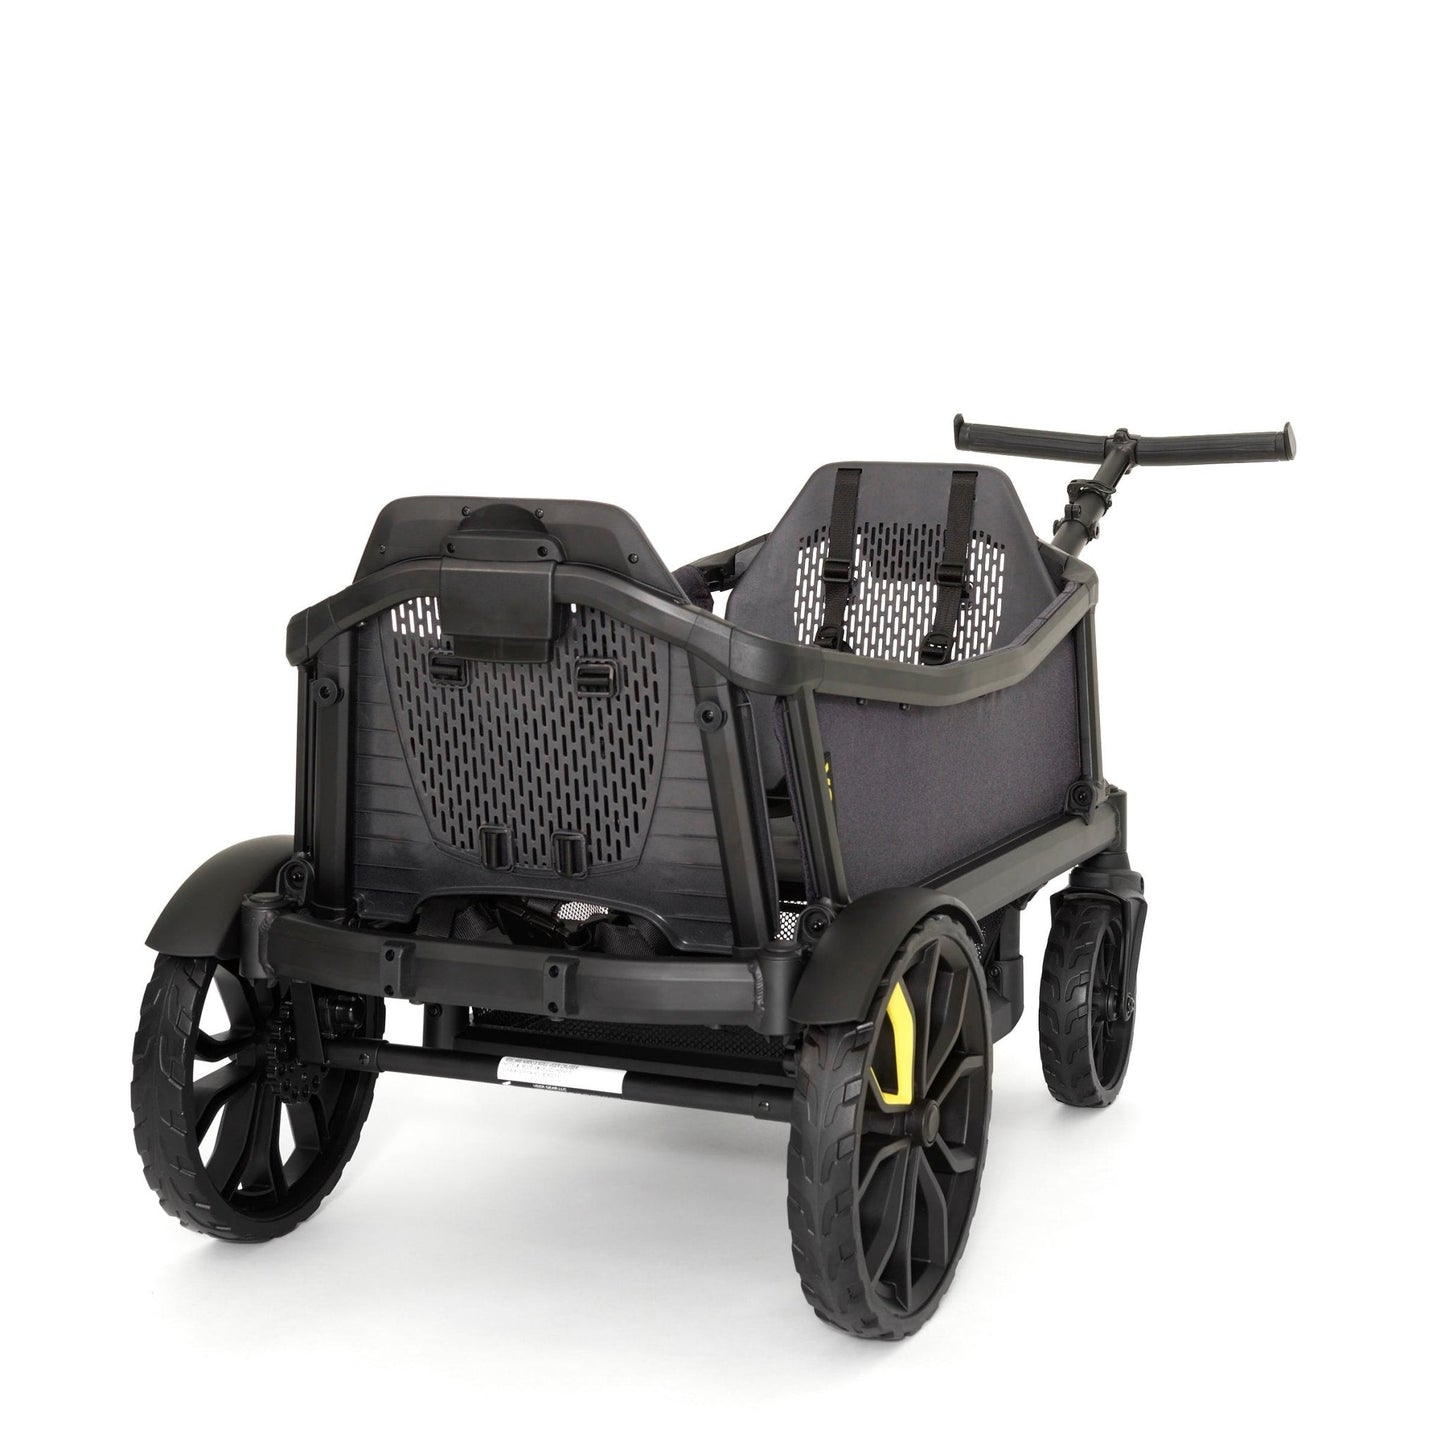 Veer Cruiser Premium Stroller - Little Kids Business